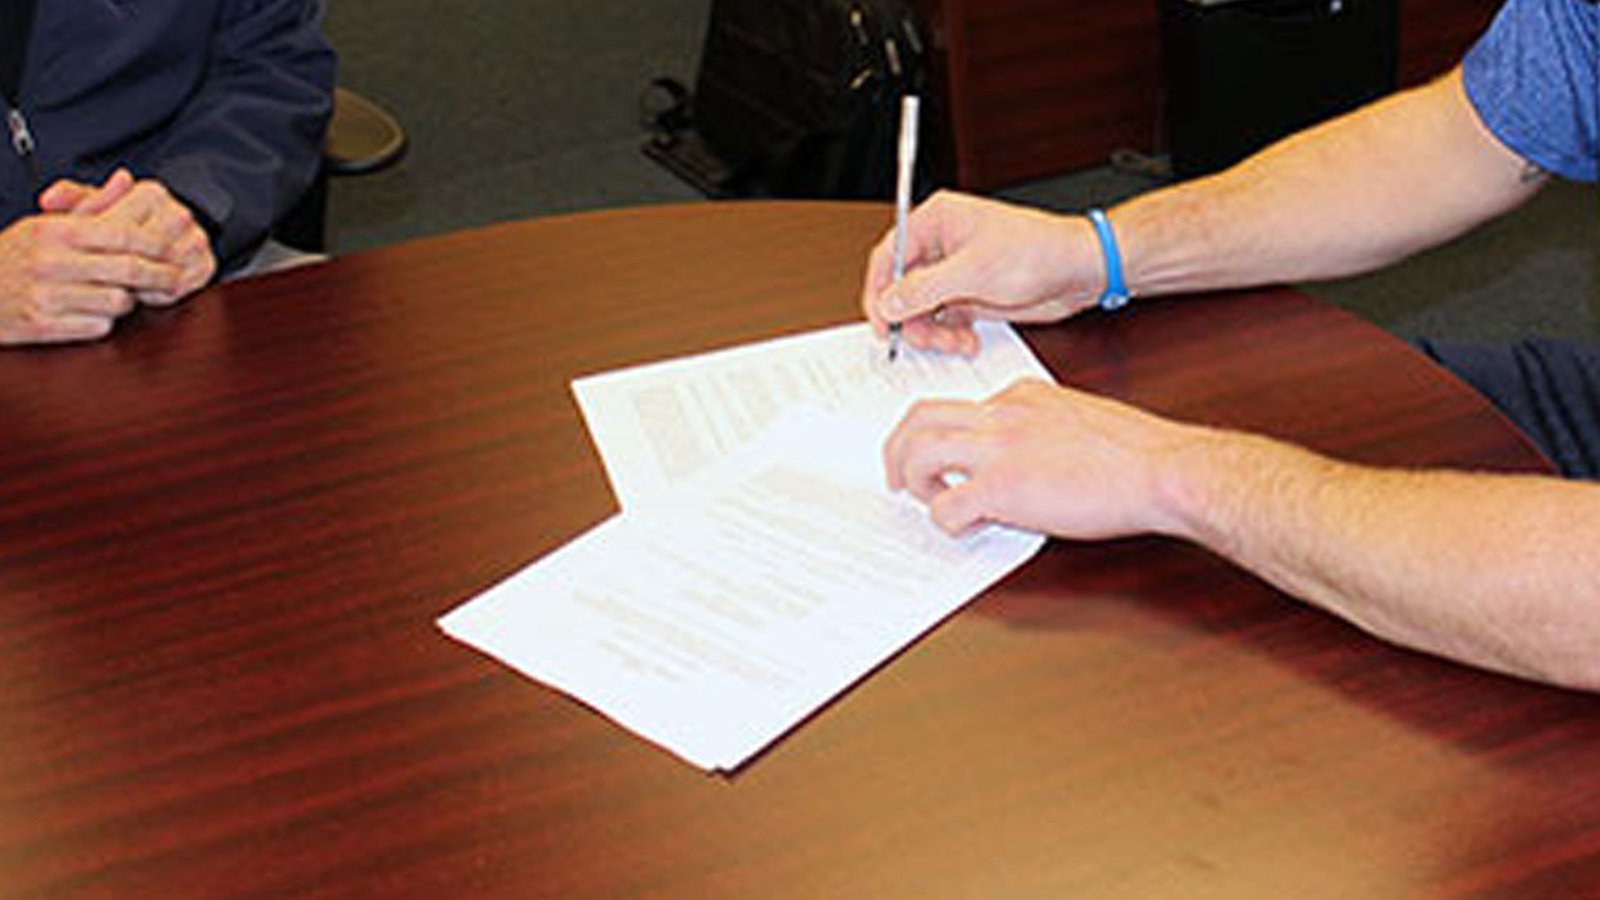 Hawks sign veteran defenseman to contract 